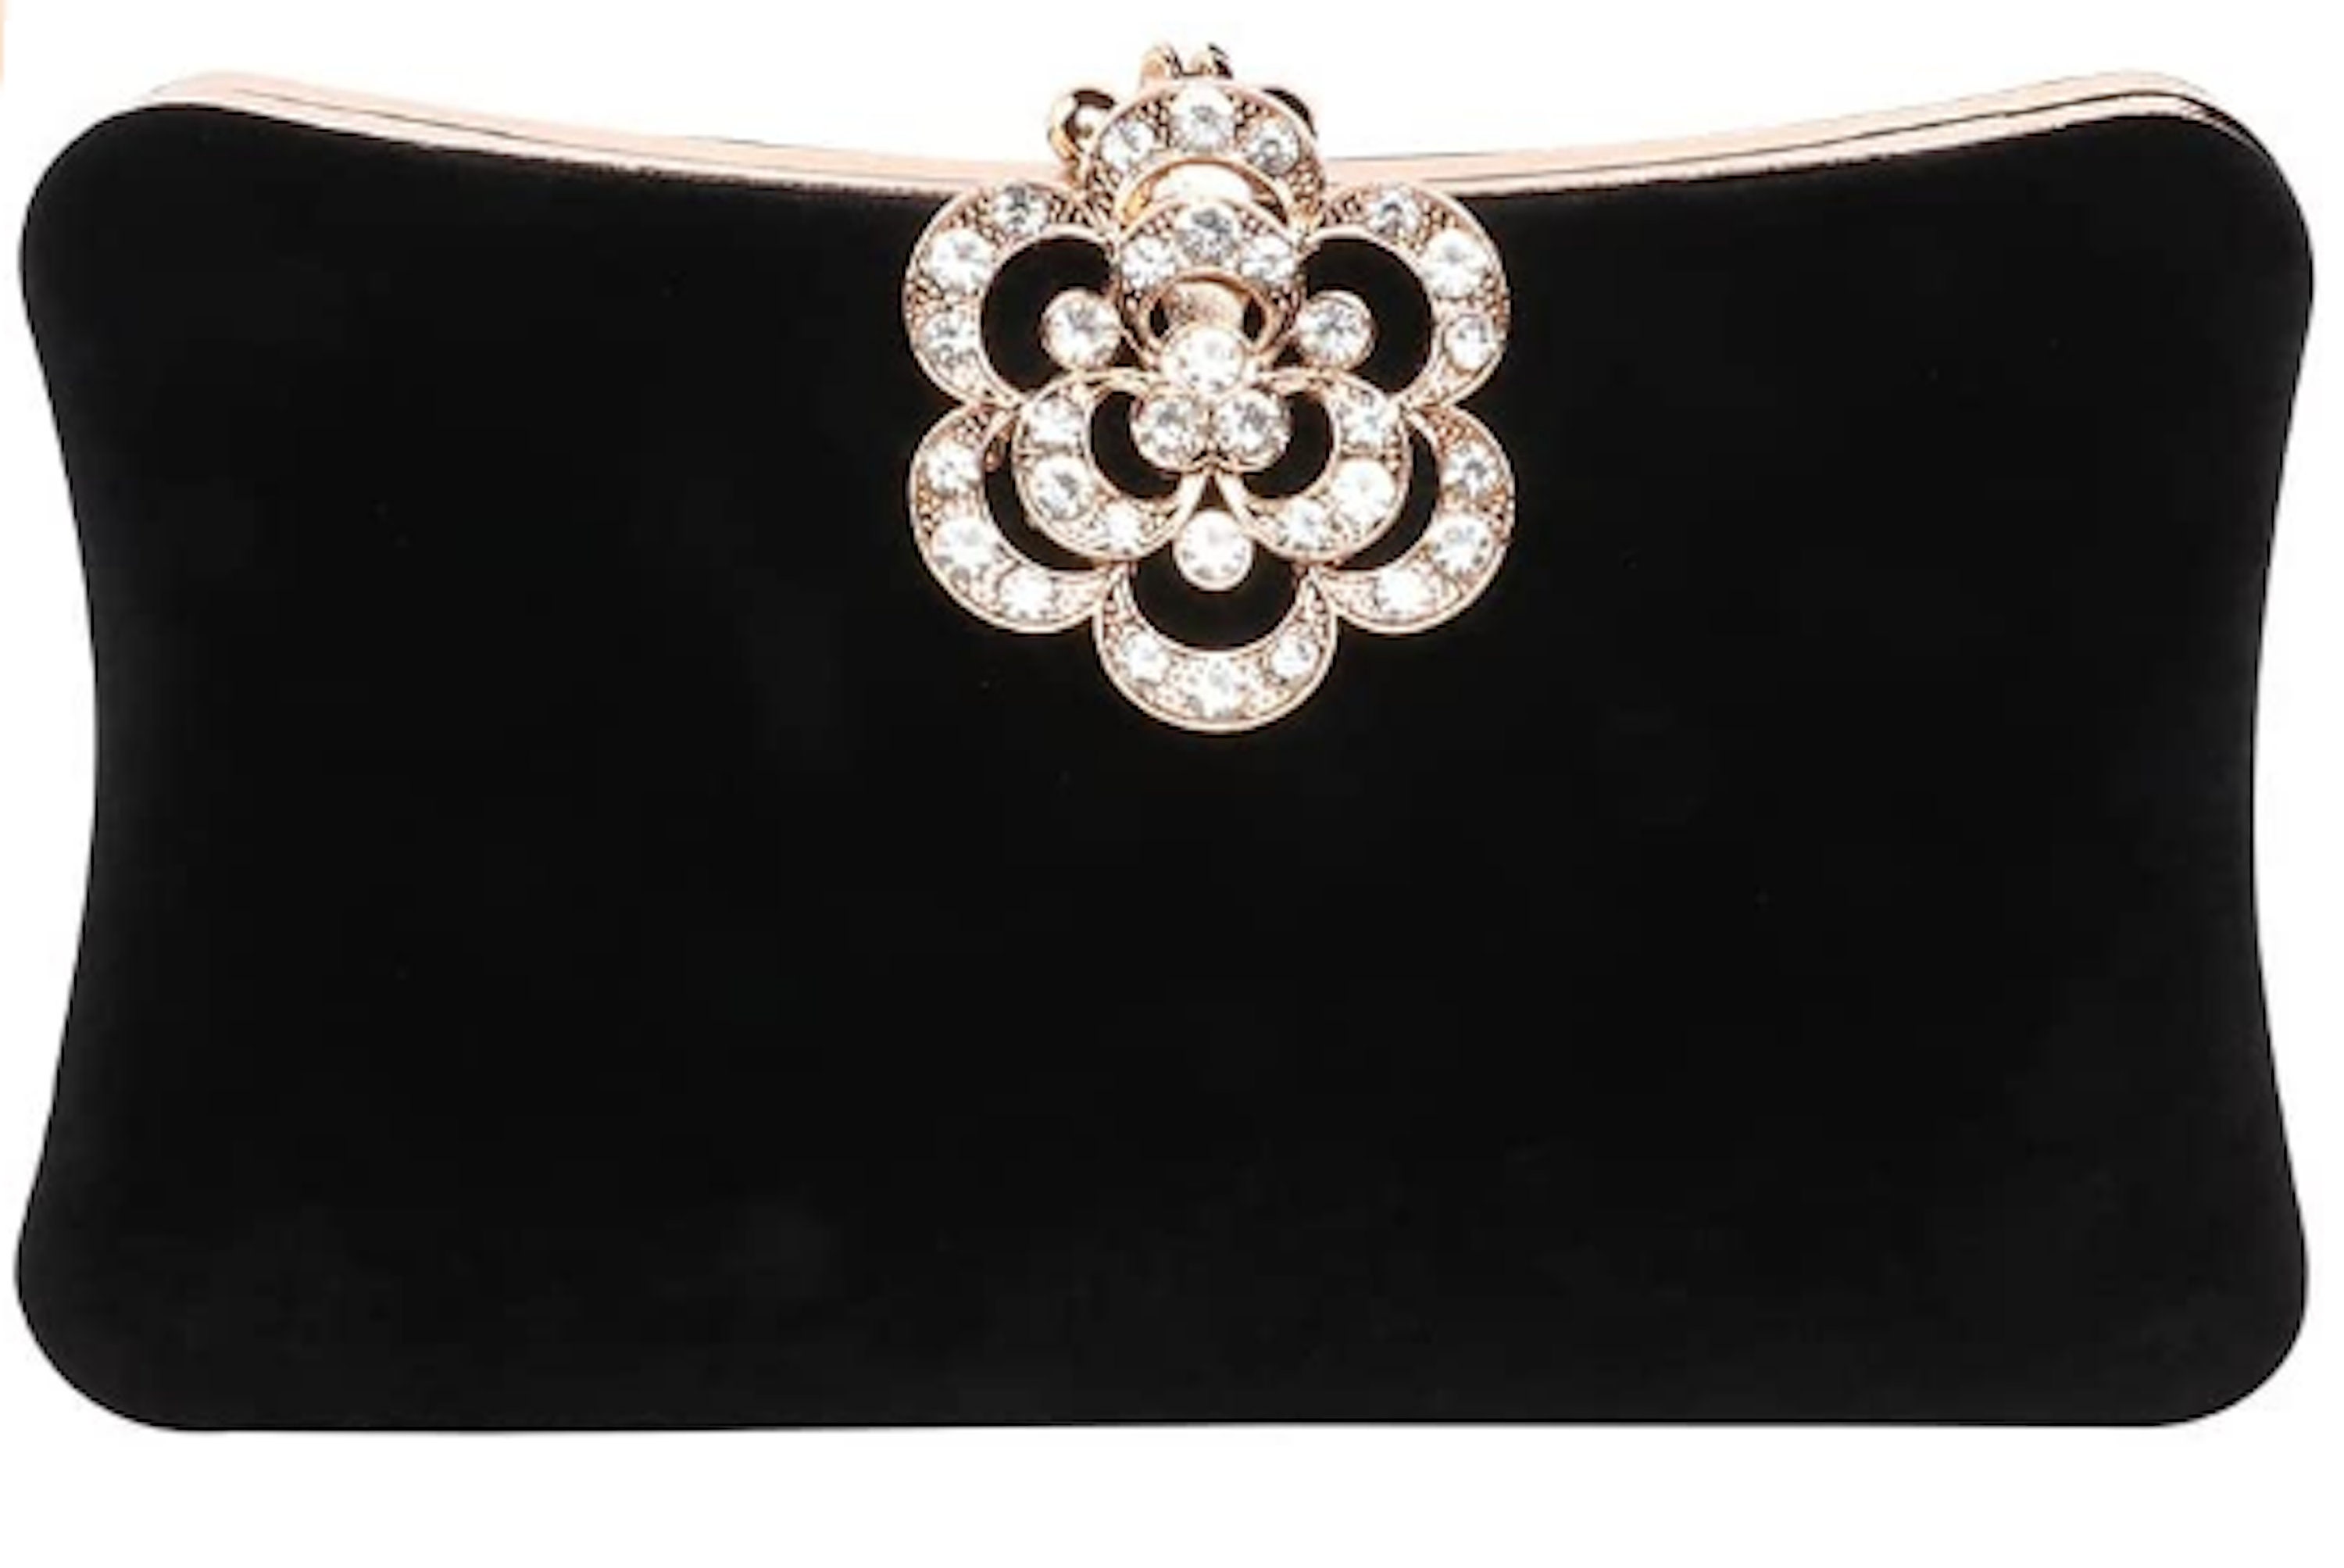 Black Crystal Evening Clutch  Shoulder Bag Handbag Purse